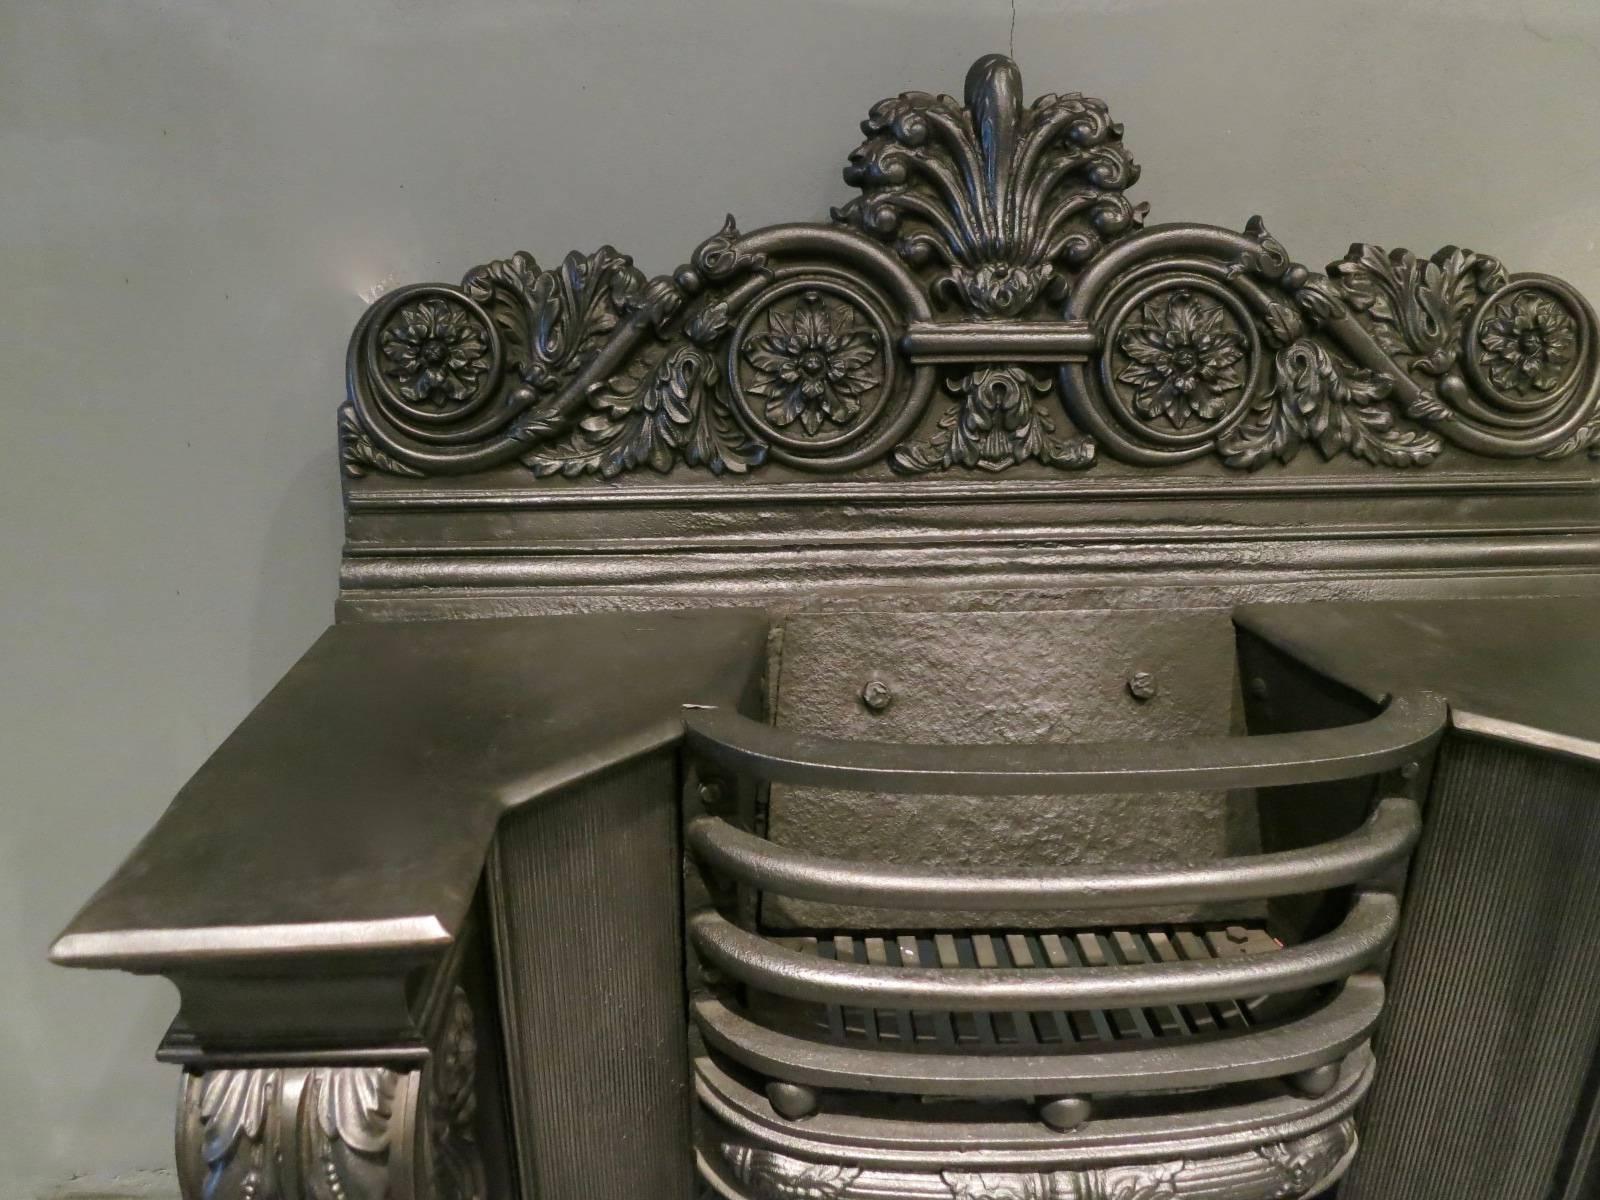 Une grille de foyer finement moulée du début du 19e siècle, à la manière de George Bullock. Les montants de la console, à feuilles d'acanthe enroulées, sont ornés de panneaux en roseau inversé, les barres frontales sont arquées et décorées de boules